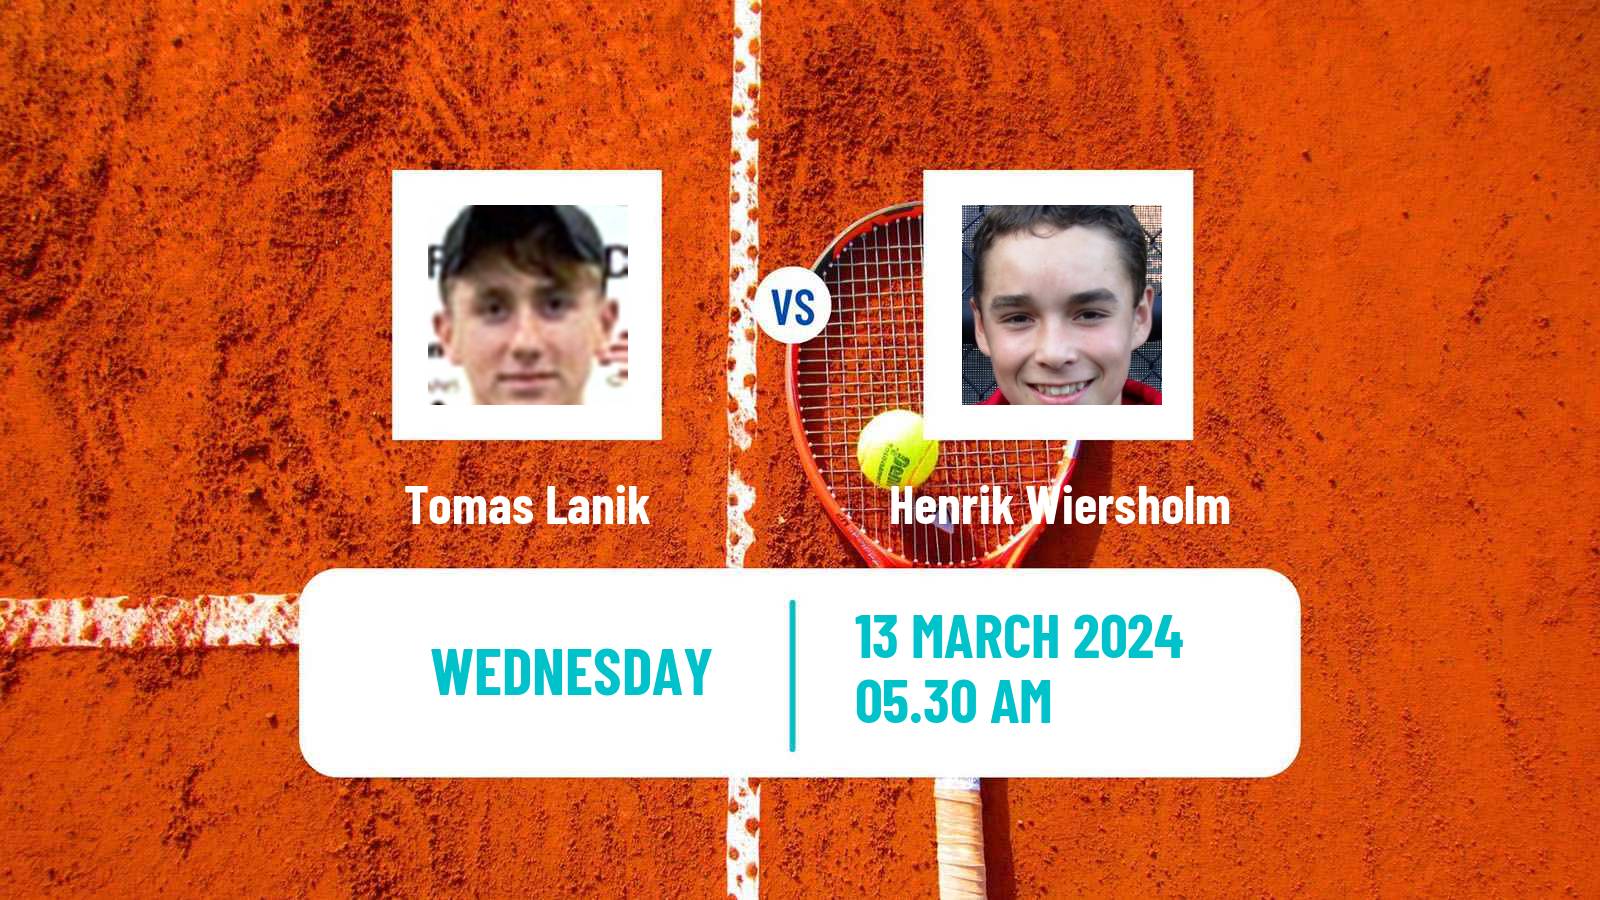 Tennis ITF M15 Heraklion 2 Men Tomas Lanik - Henrik Wiersholm